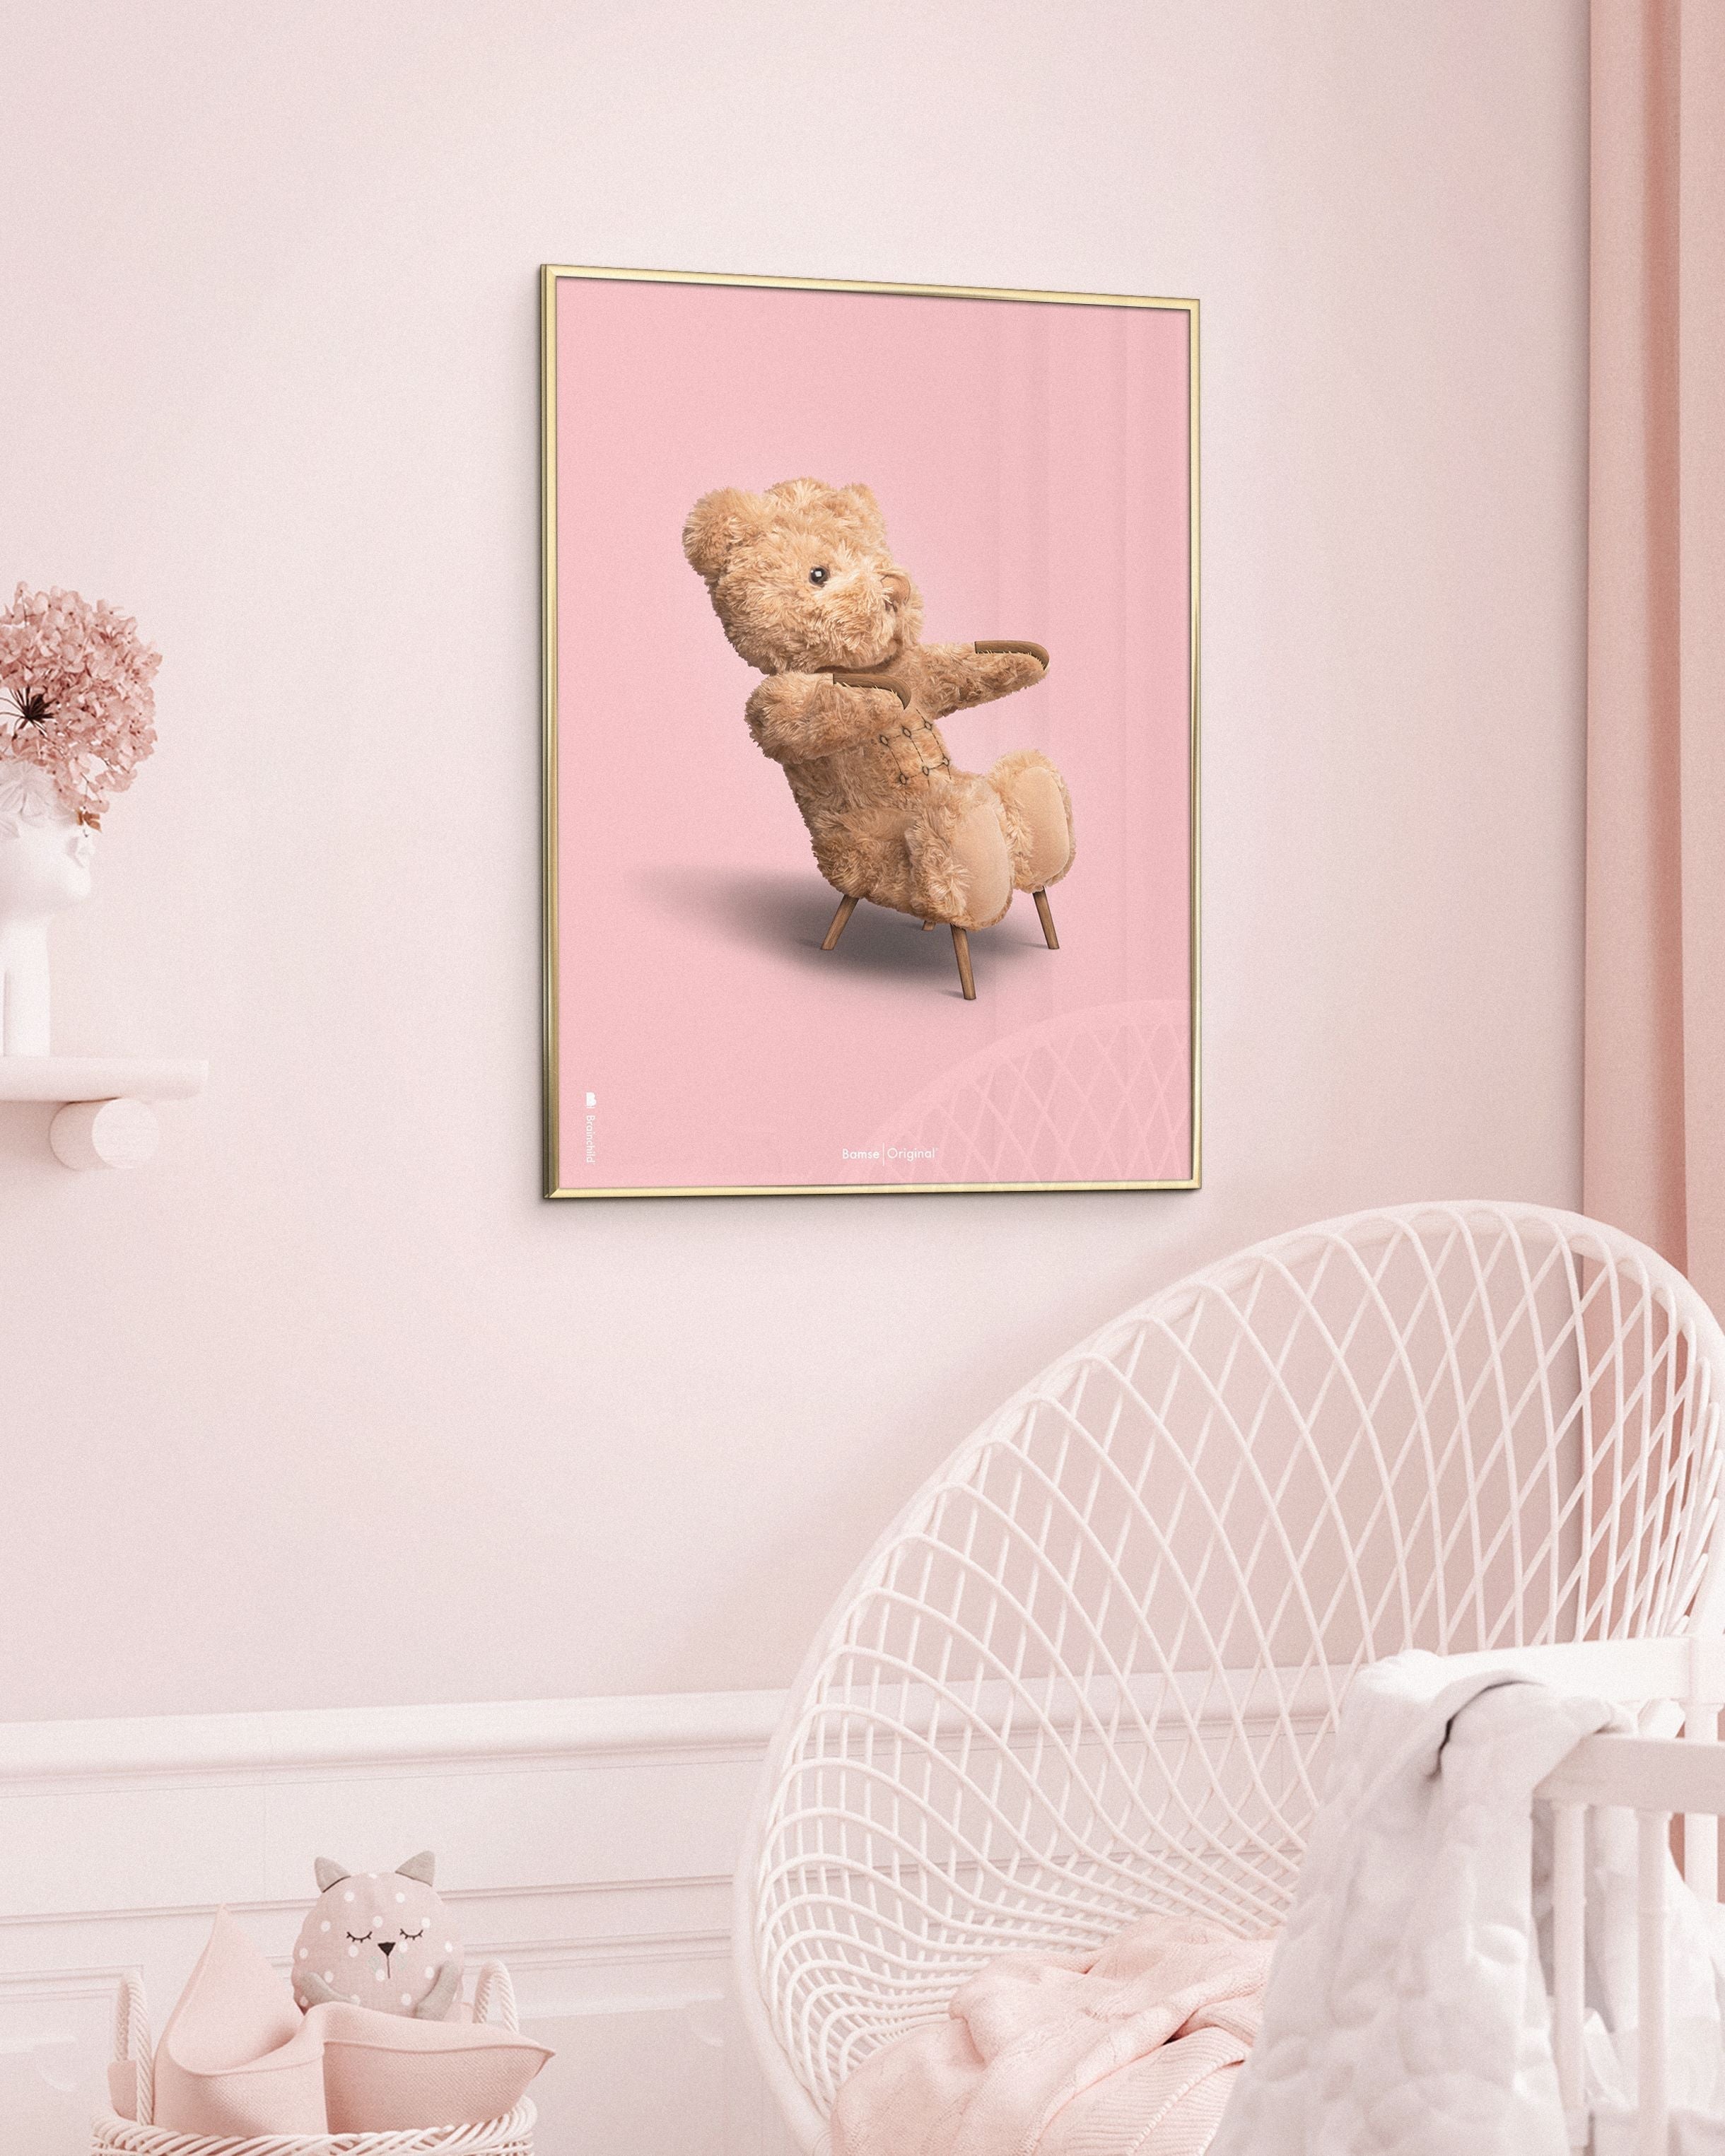 Brainchild Teddy Bear Classic plakát z plakátu vyrobený z černého lakovaného dřeva 50x70 cm, růžové pozadí